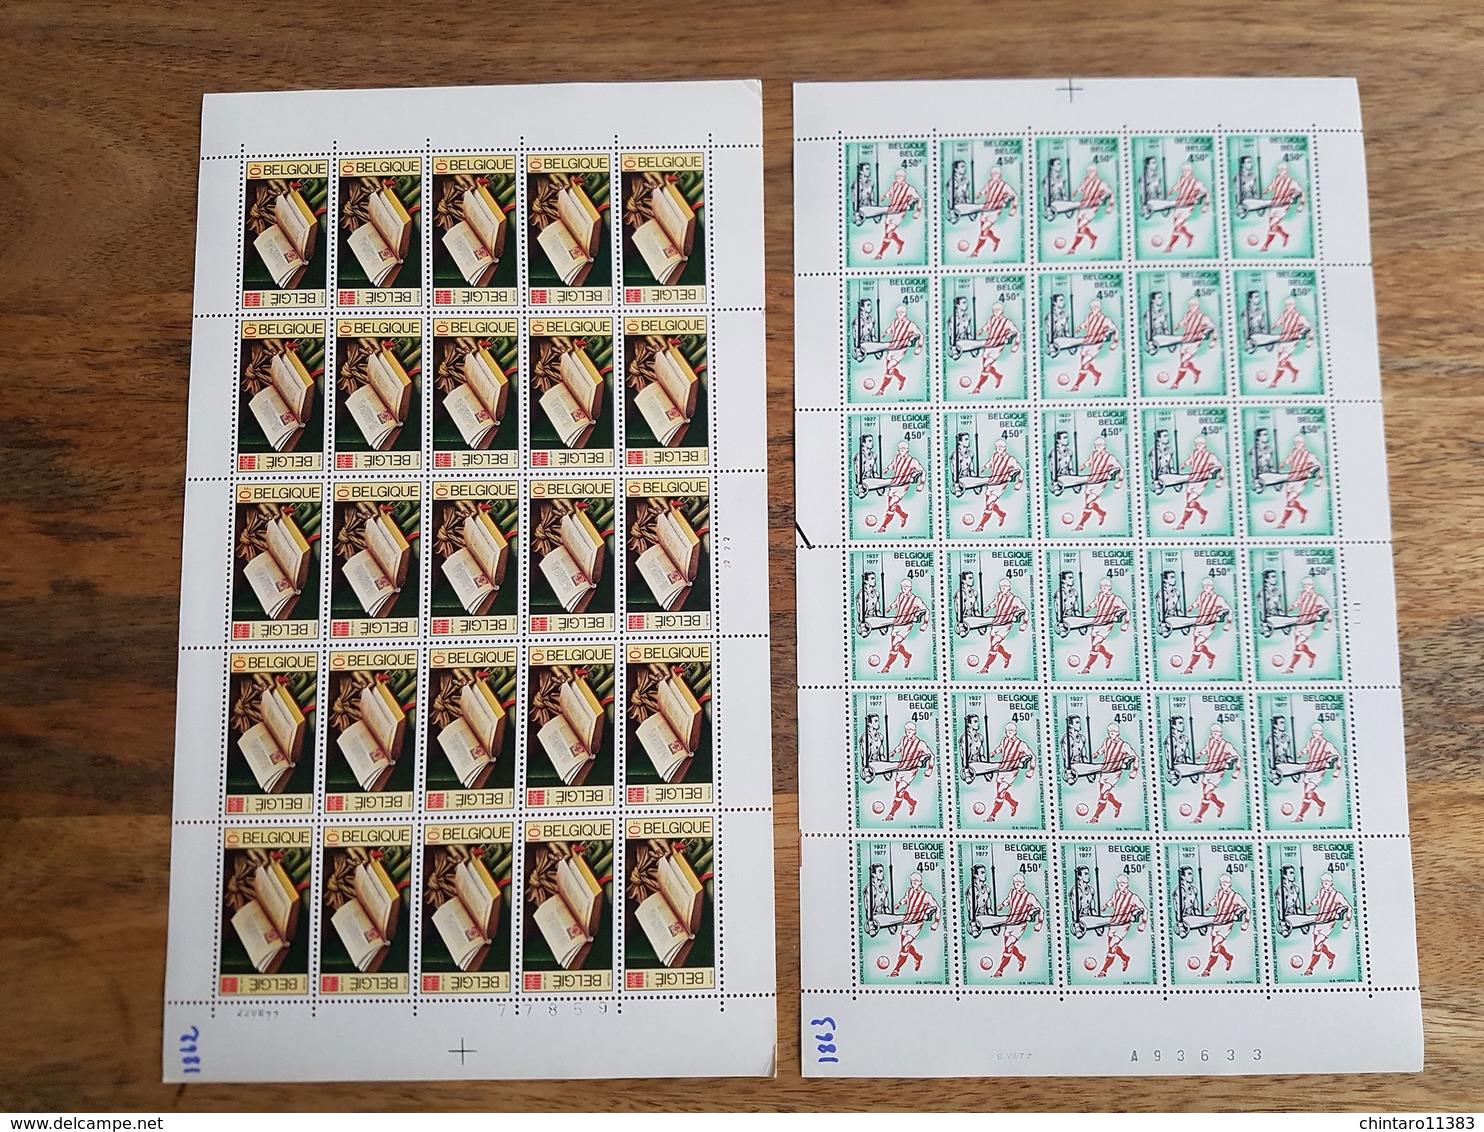 Lot feuilles complètes de timbres Belgique - Année 1977